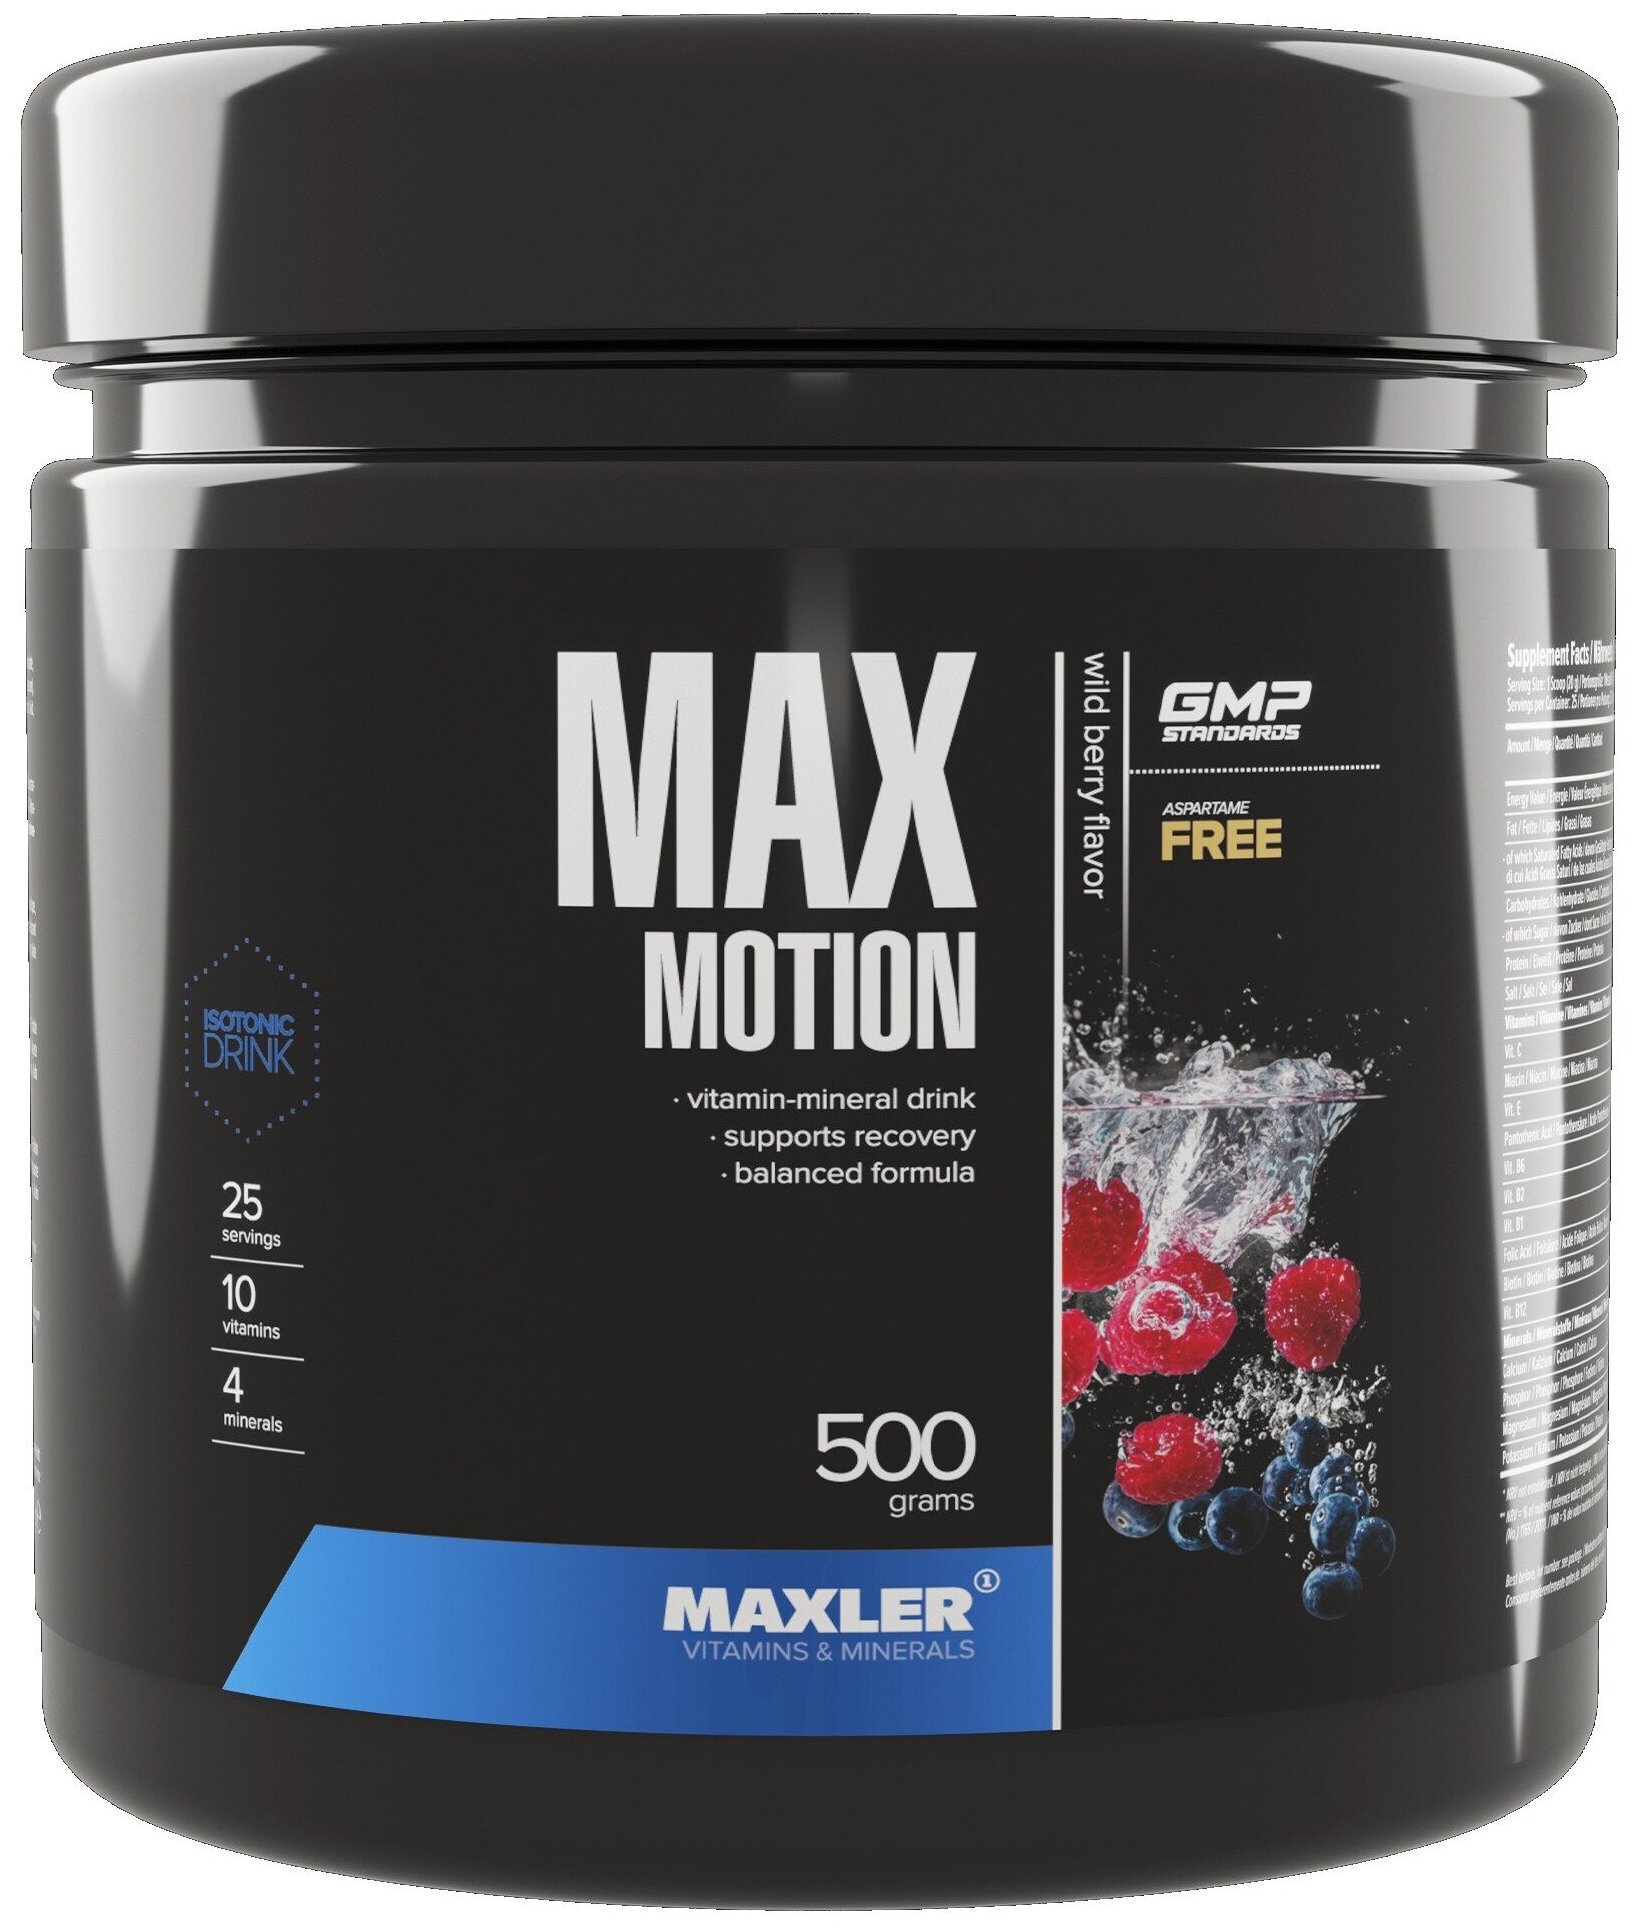   Maxler Max Motion (500 )  